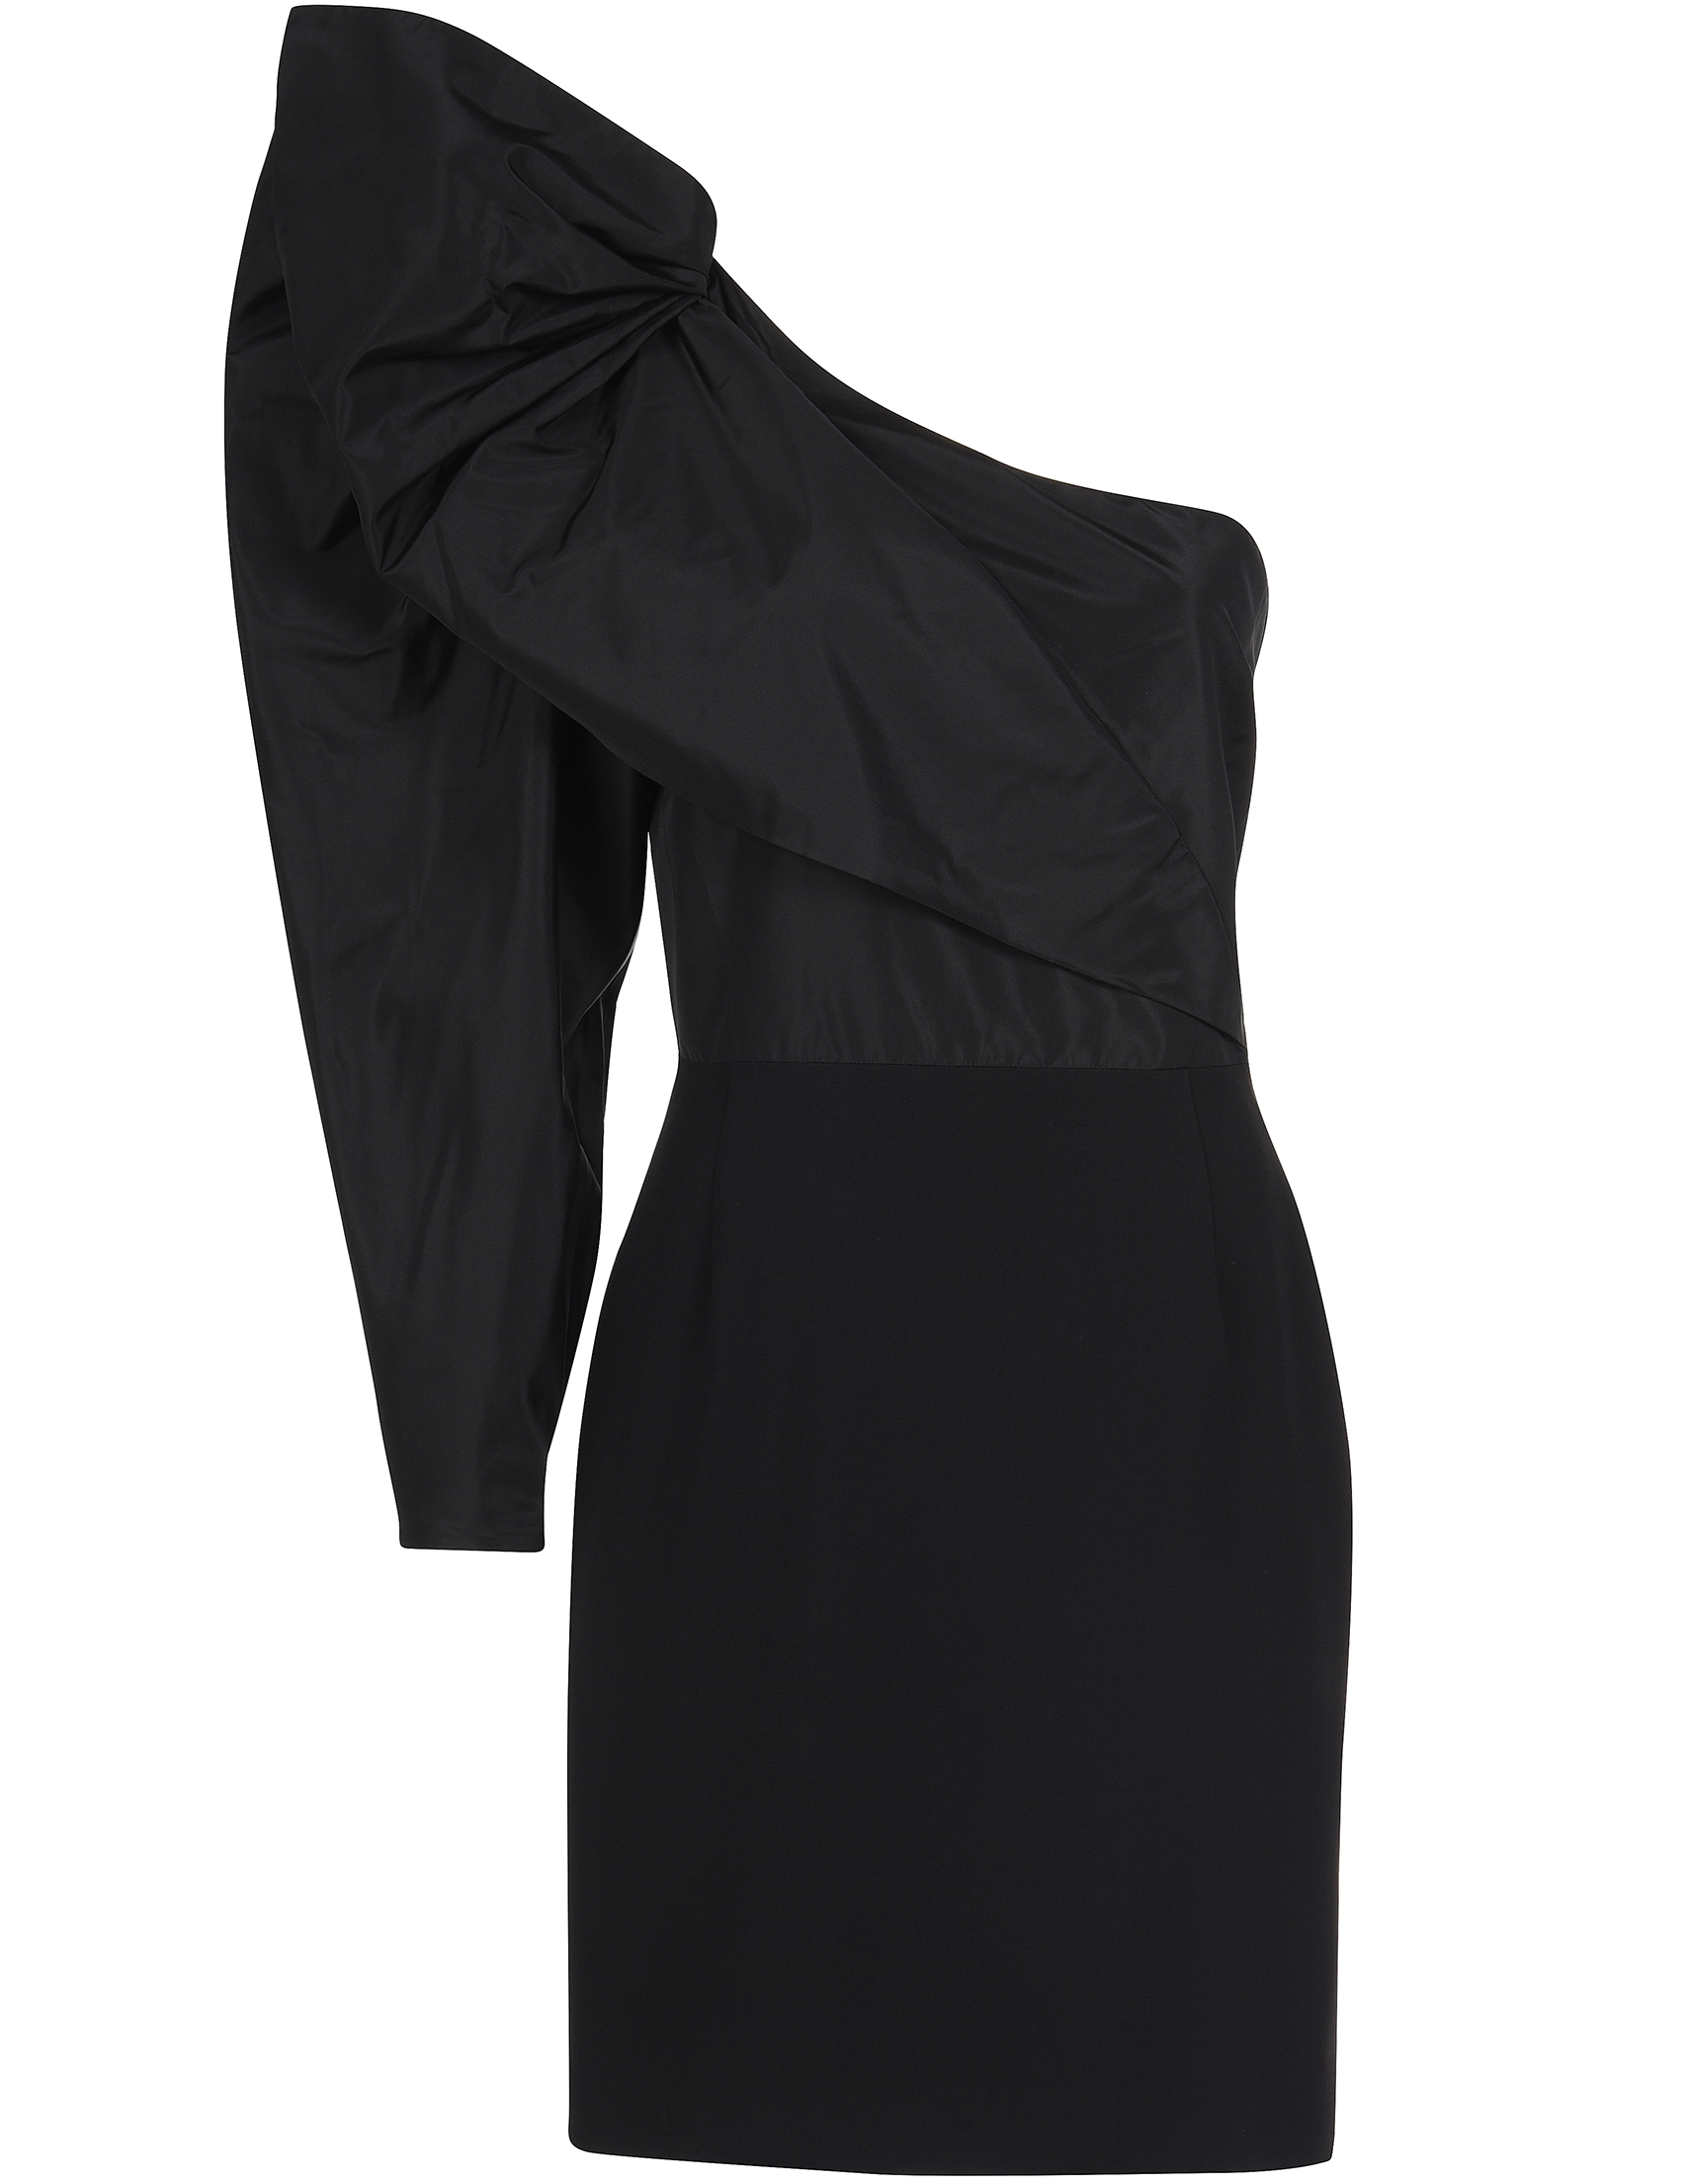 Женское платье STELLA MCCARTNEY 520487-1000_black